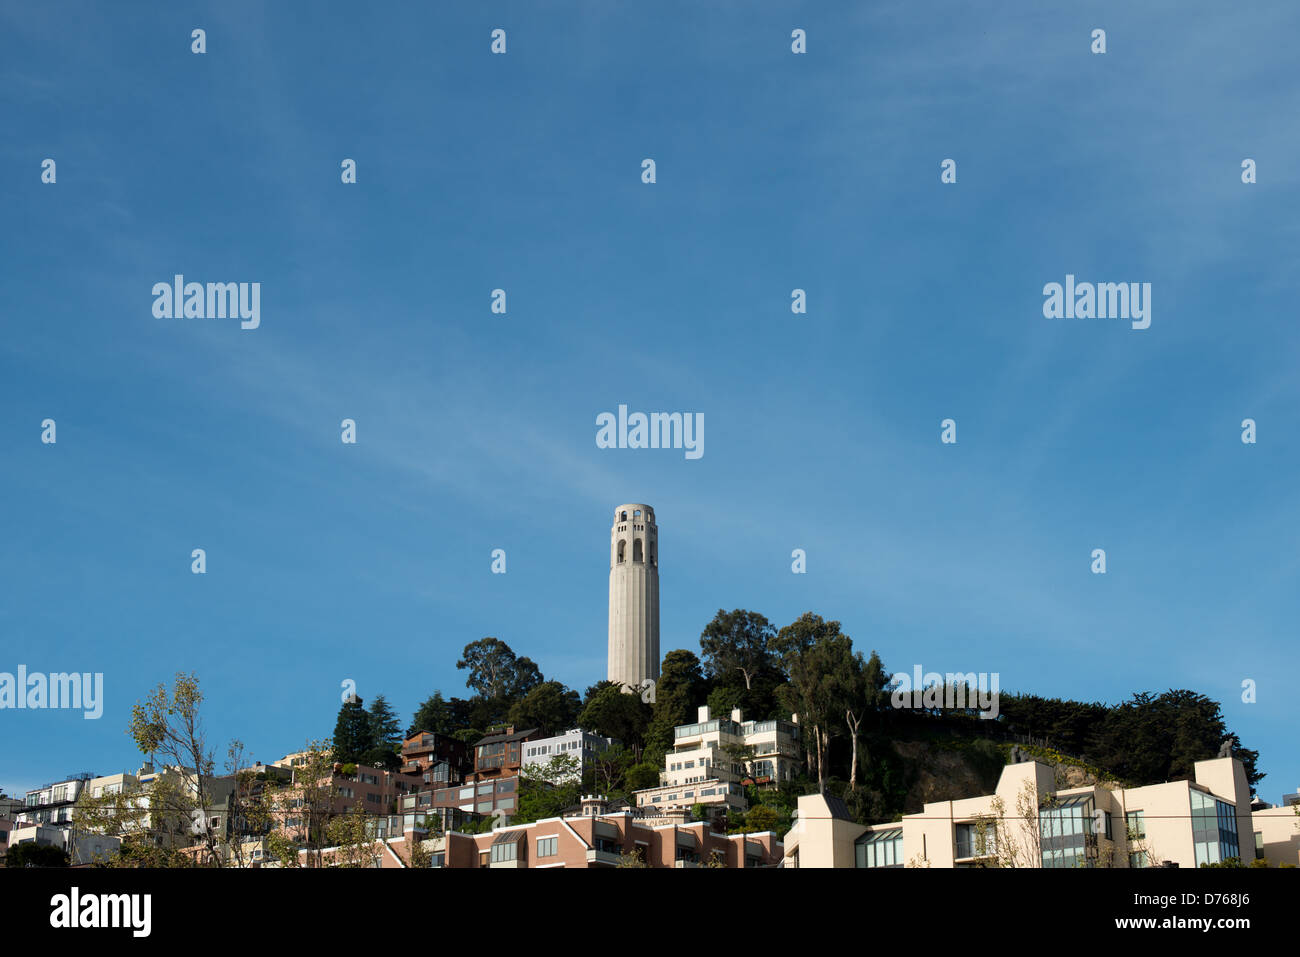 SAN FRANCISCO, California - Torre Coit sulla sommità del colle del telegrafo in San Francisco, California. La torre fu costruita nel 1933 dai fondi del lascito testamentario di Lillie Coit Hitchcocl. Foto Stock